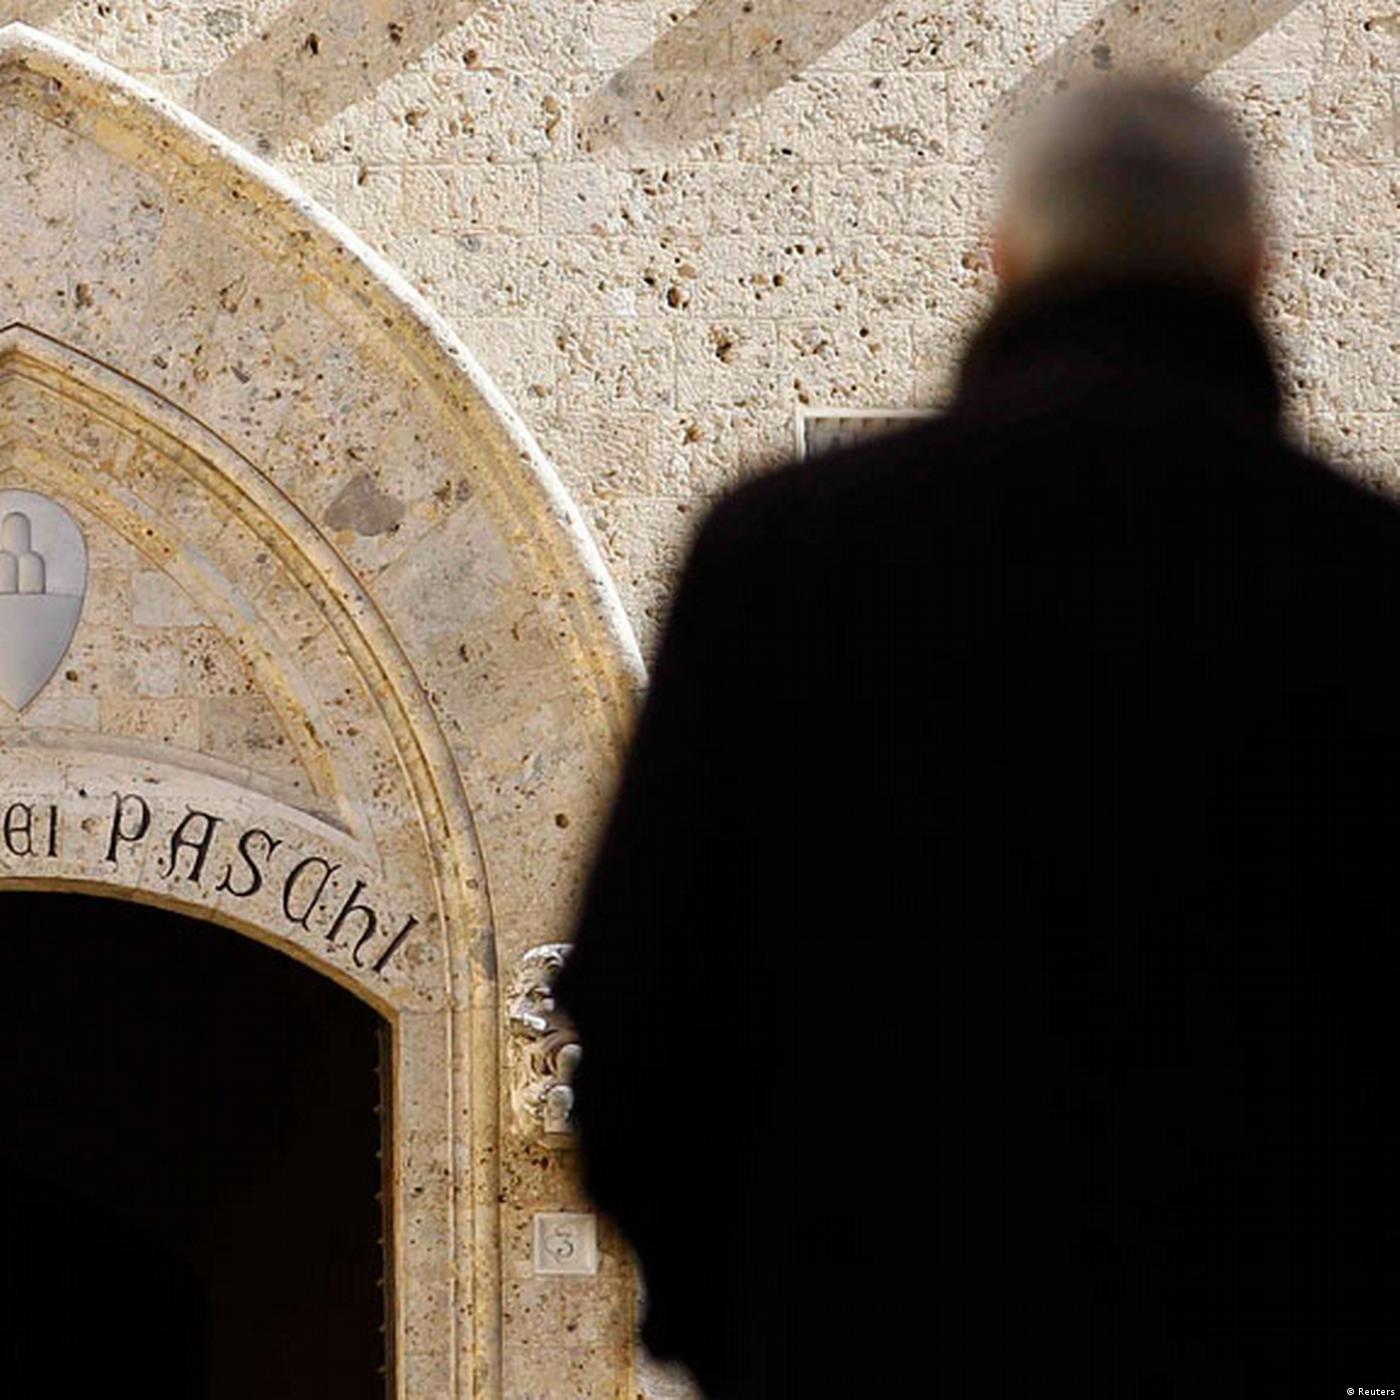 Italy: The Fallen Bank